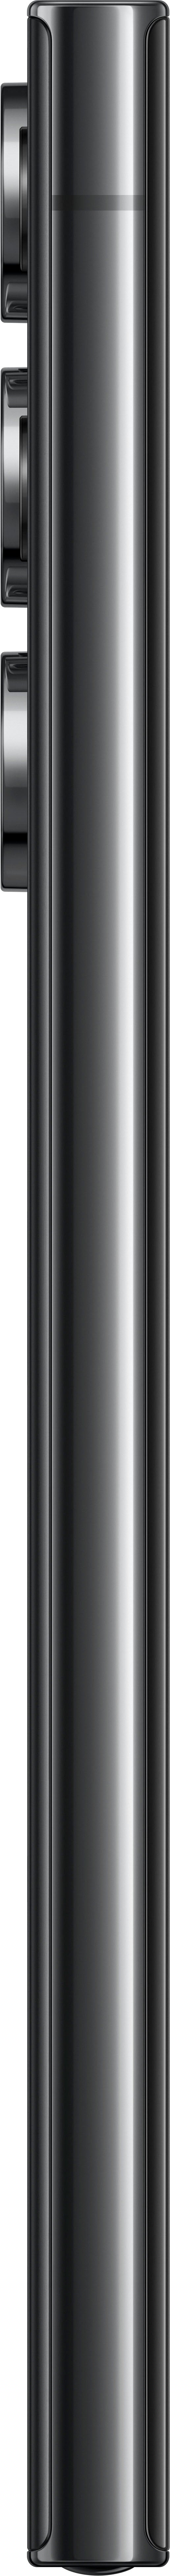 Samsung - Galaxy S23 Ultra 256GB - Phantom Black (Verizon)_13